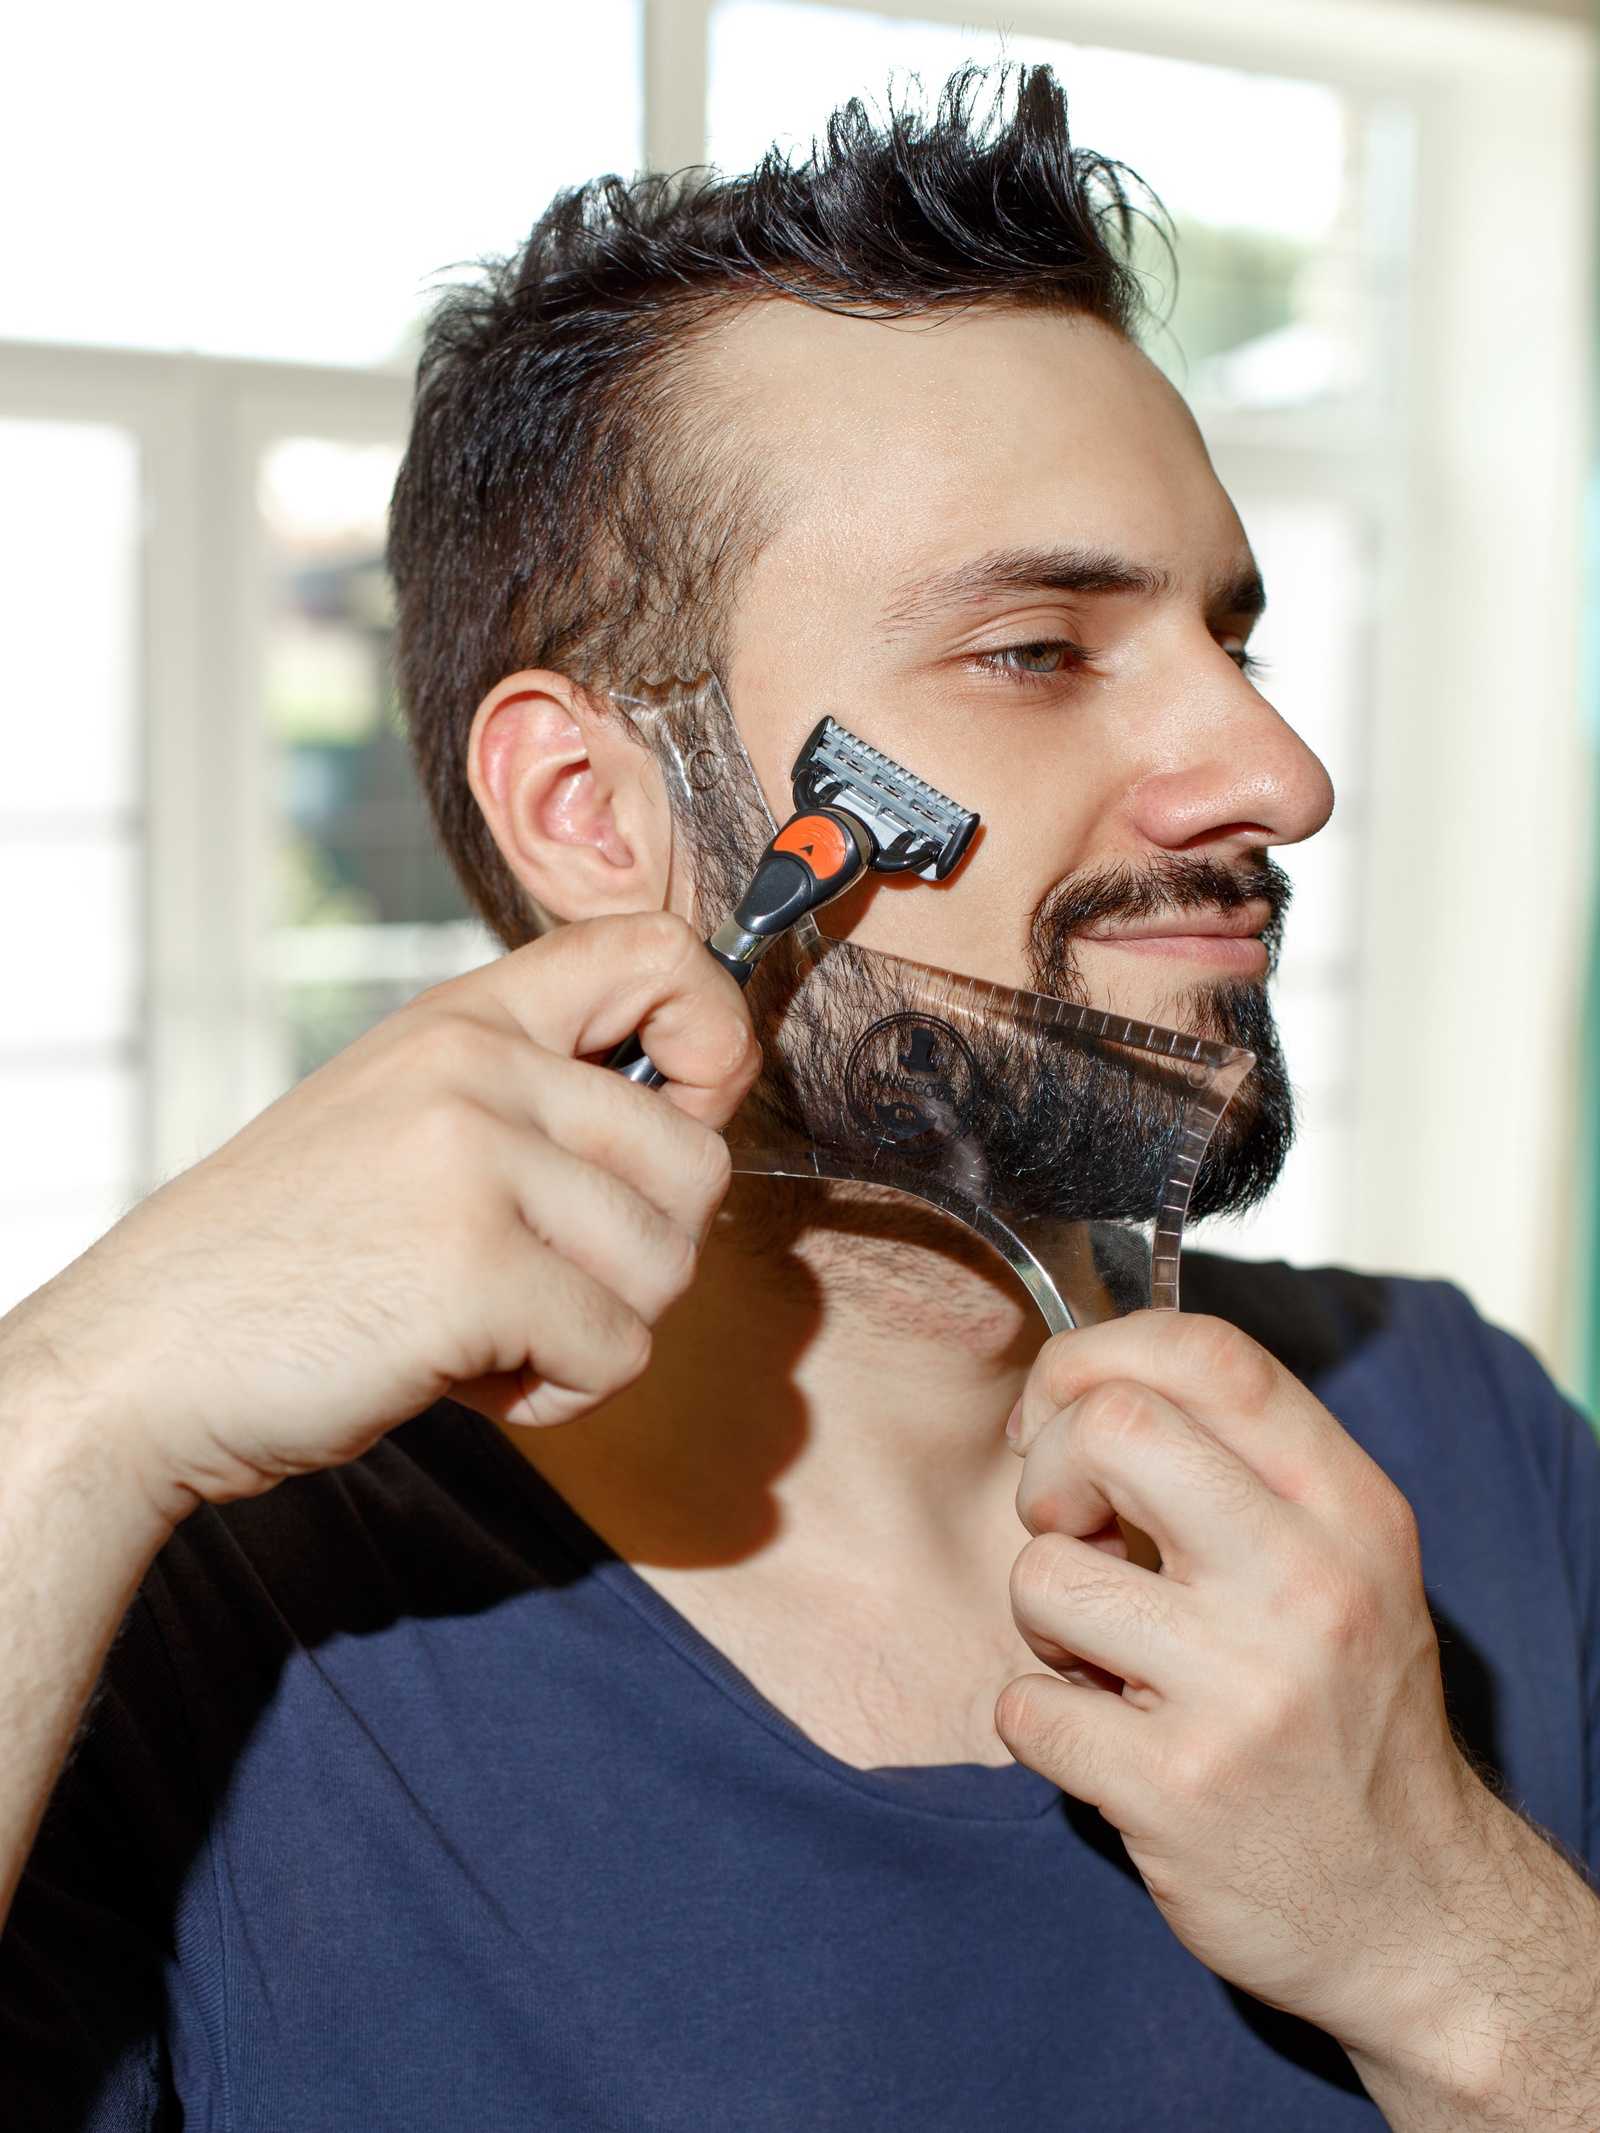 Жесткая борода: смягчить, нельзя сбрить